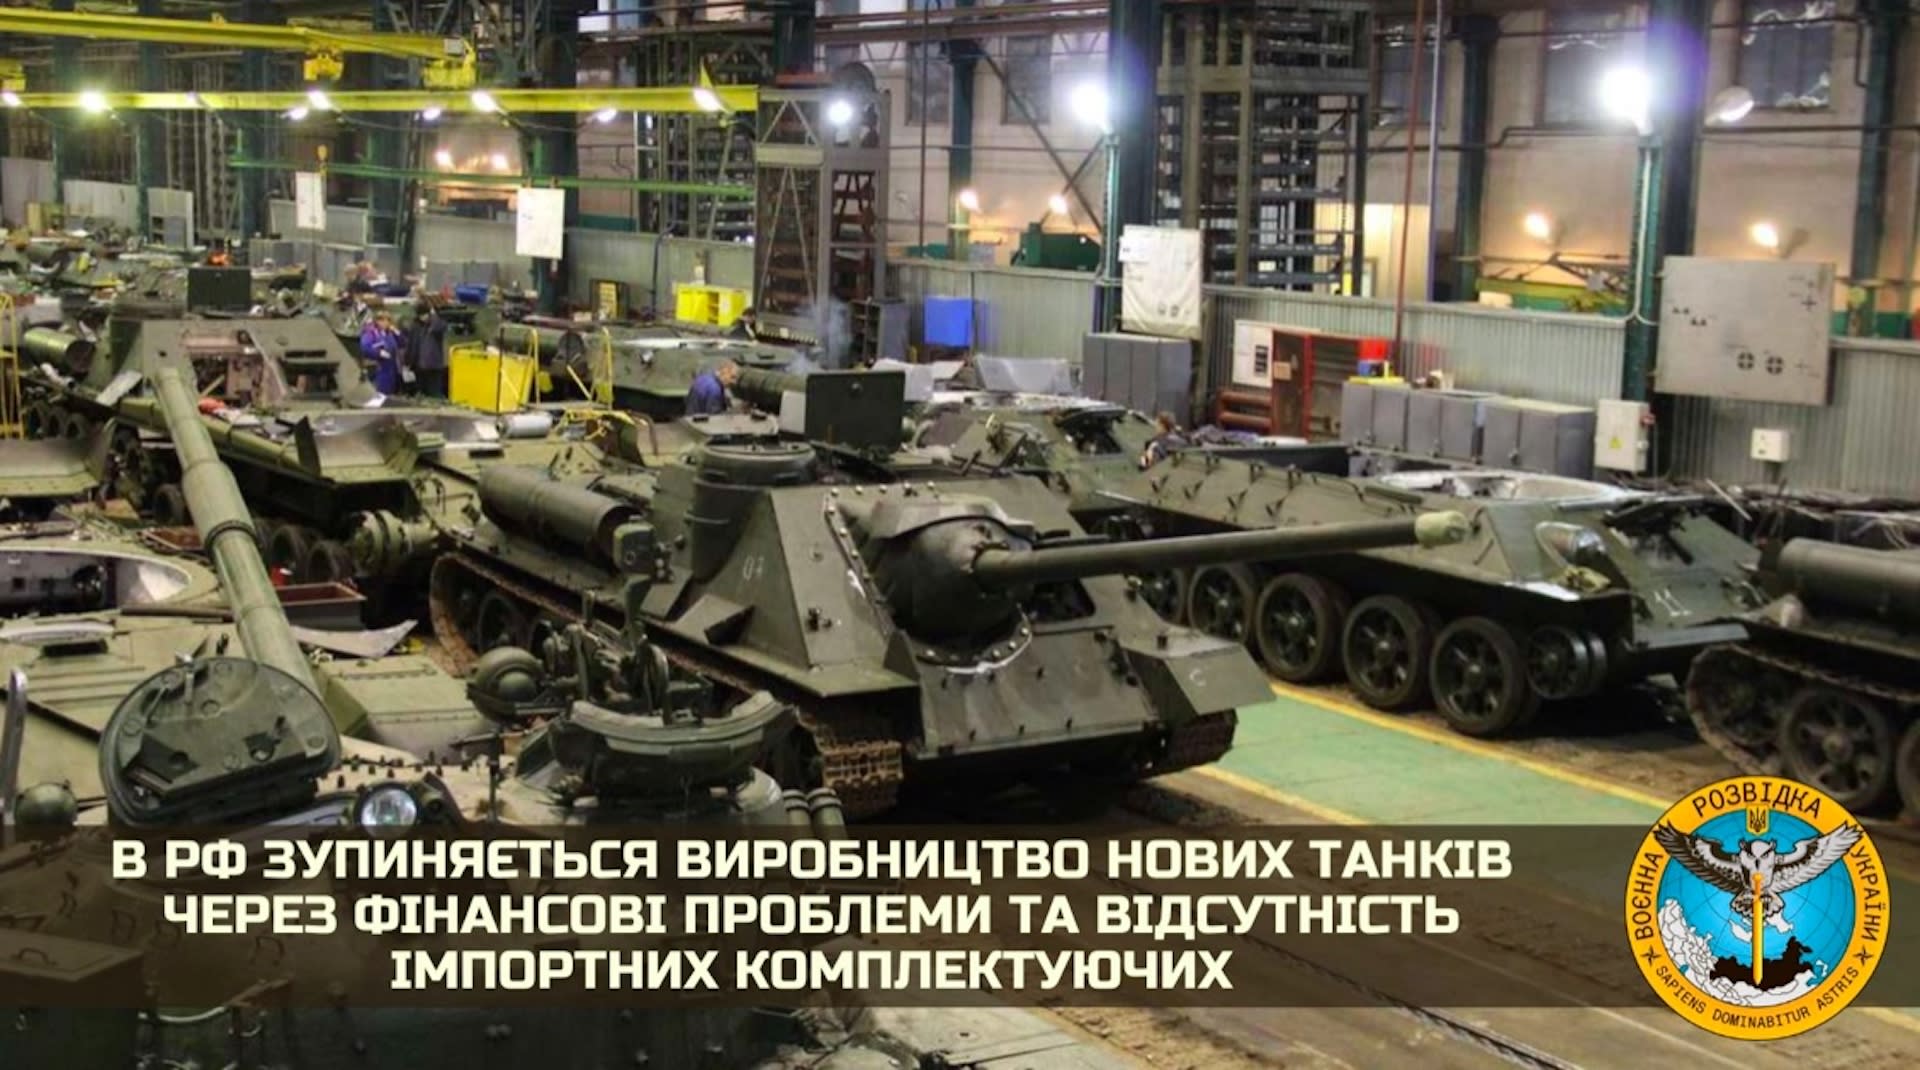 Rosja nie ma jak produkować nowych czołgów, żołnierze walczący w Ukrainie otrzymali rozkaz